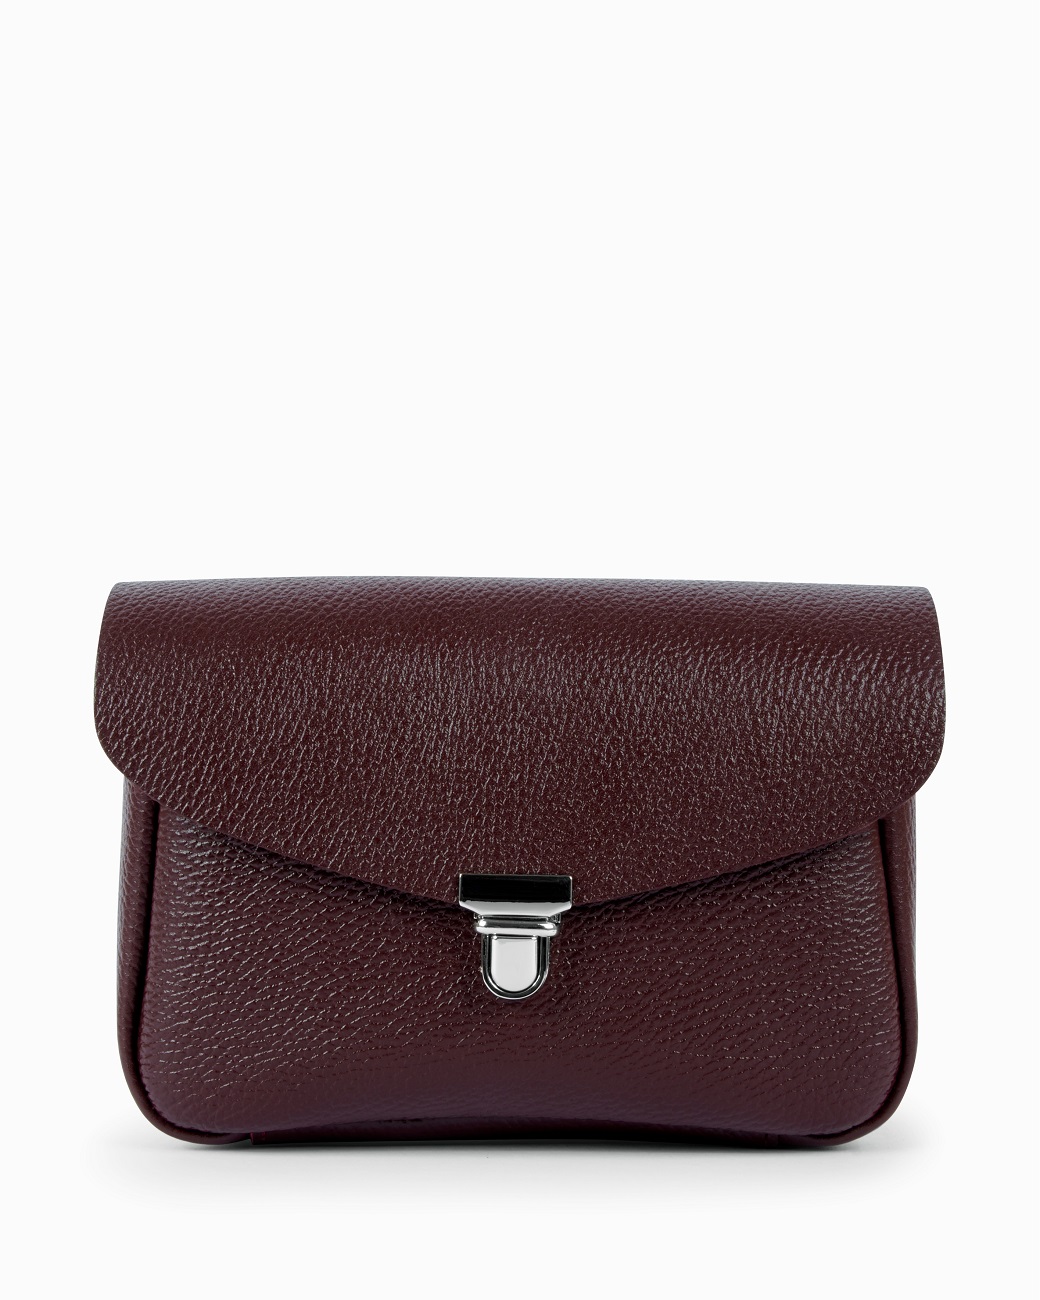 Женская сумка через плечо из натуральной кожи бордовая A001 burgundy grain